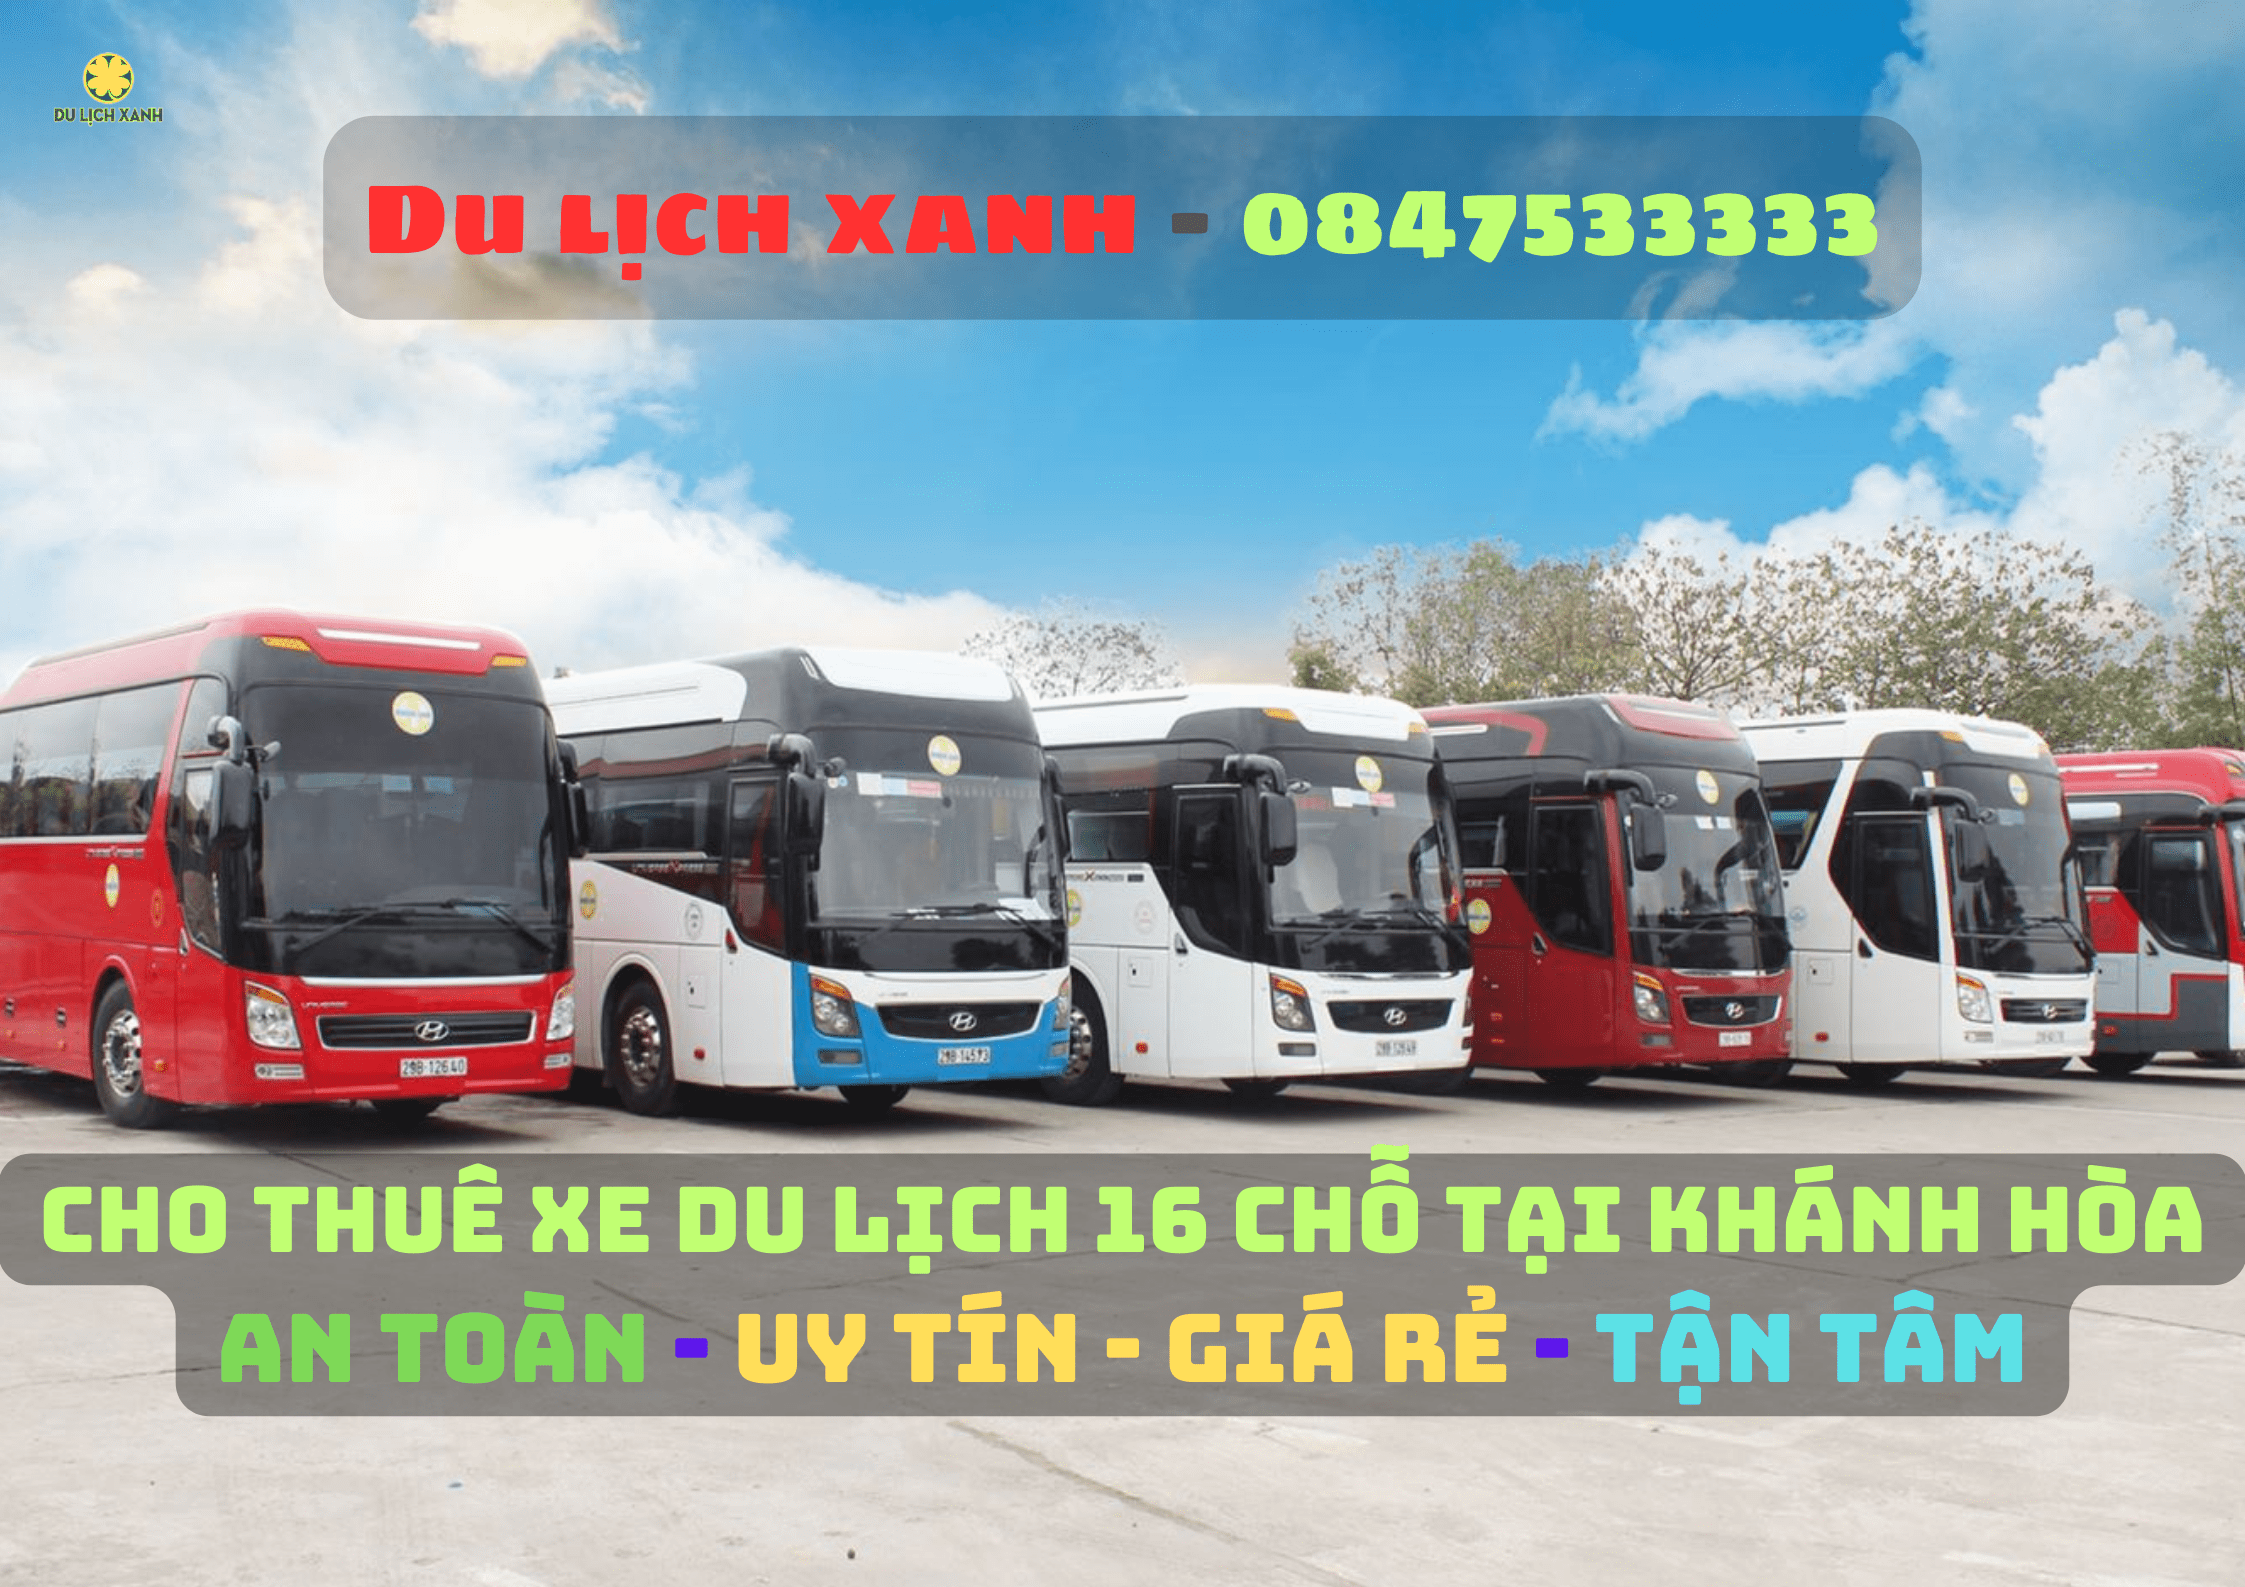 Bảng giá thuê xe du lịch tại Khánh Hòa